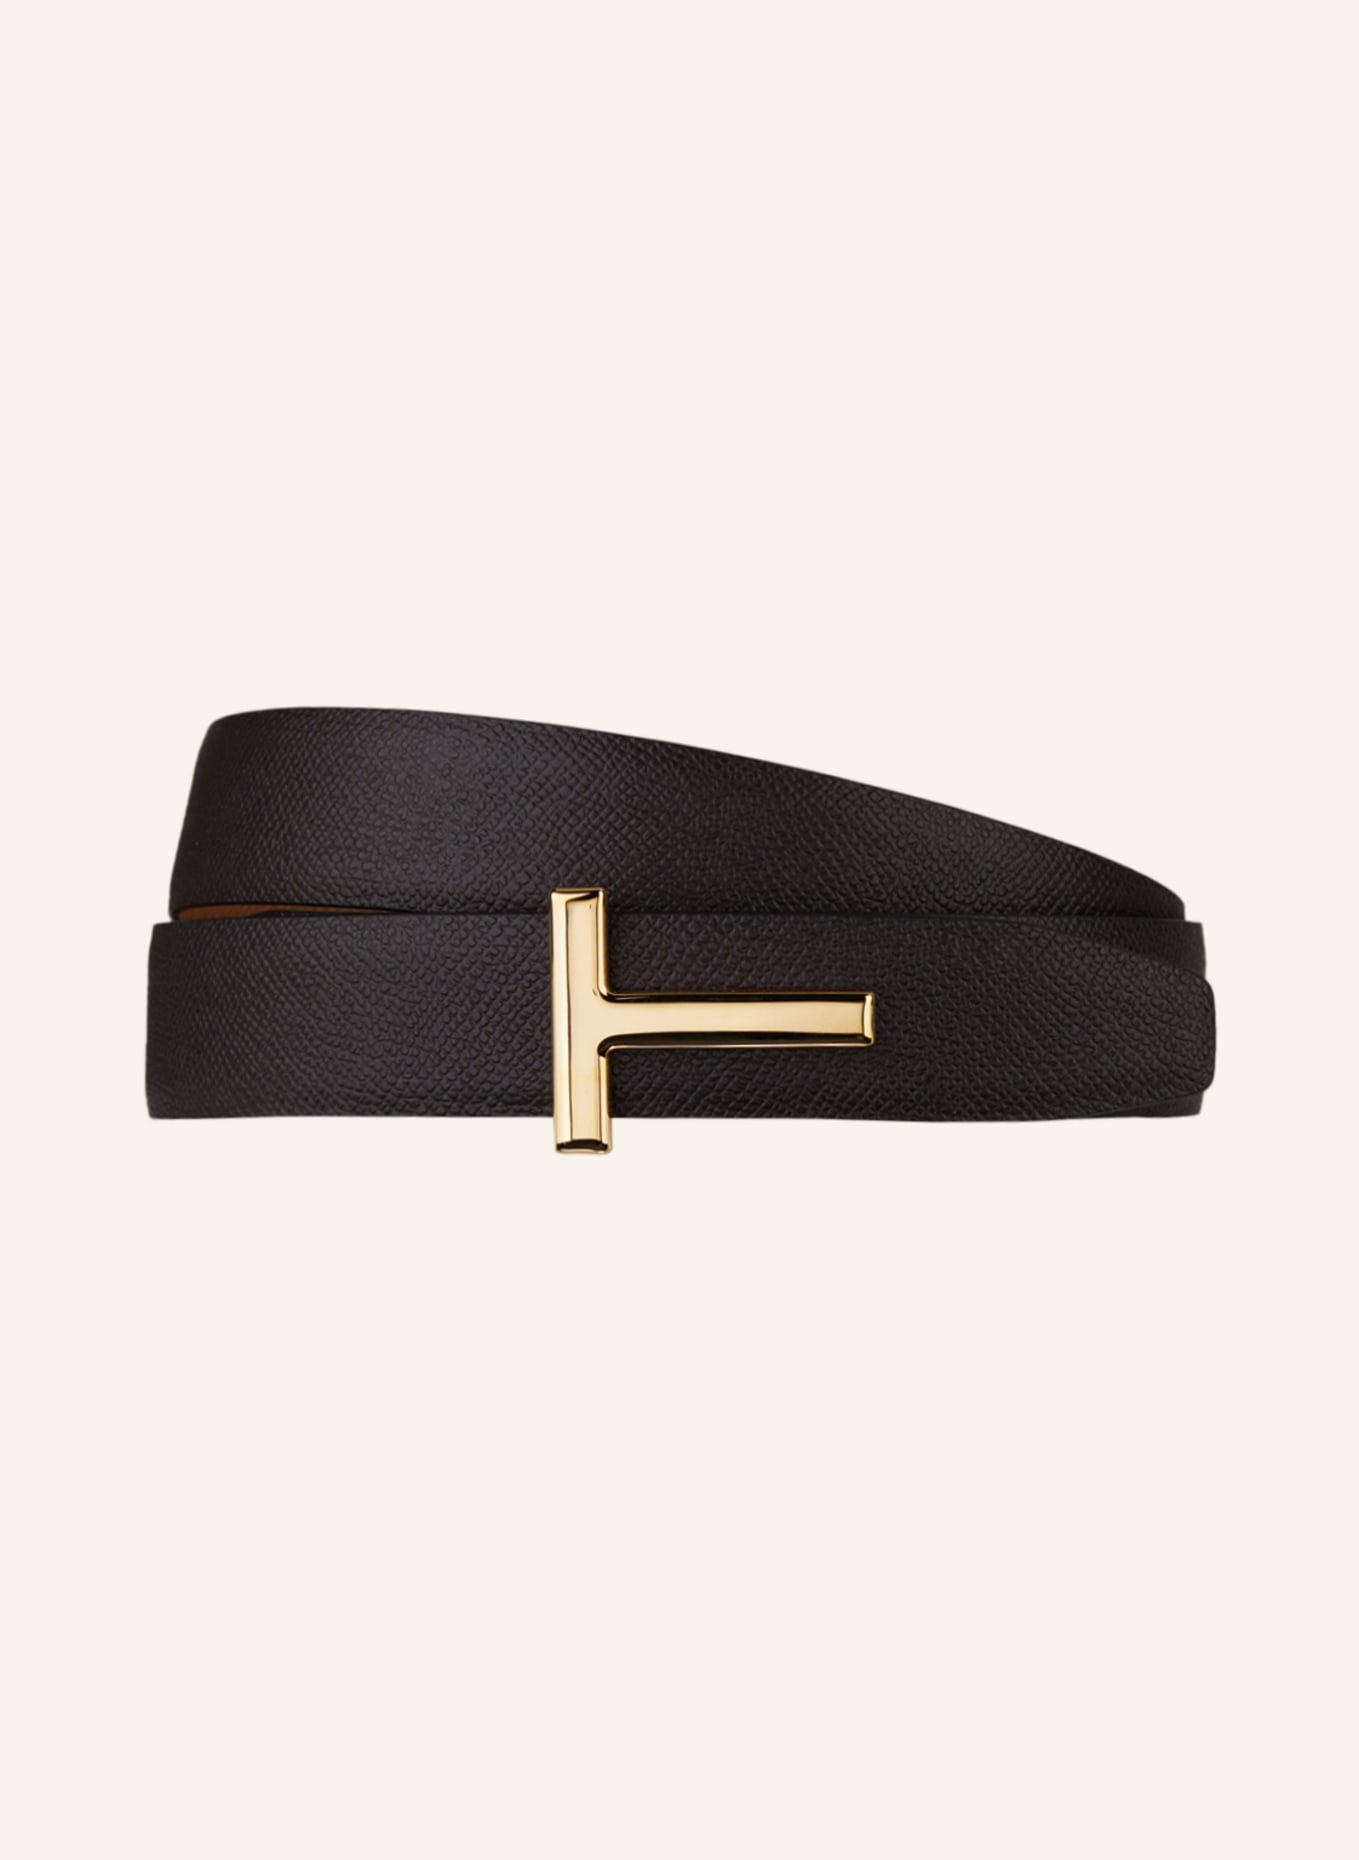 TOM FORD Reversible leather belt, Color: BROWN/ CAMEL (Image 1)